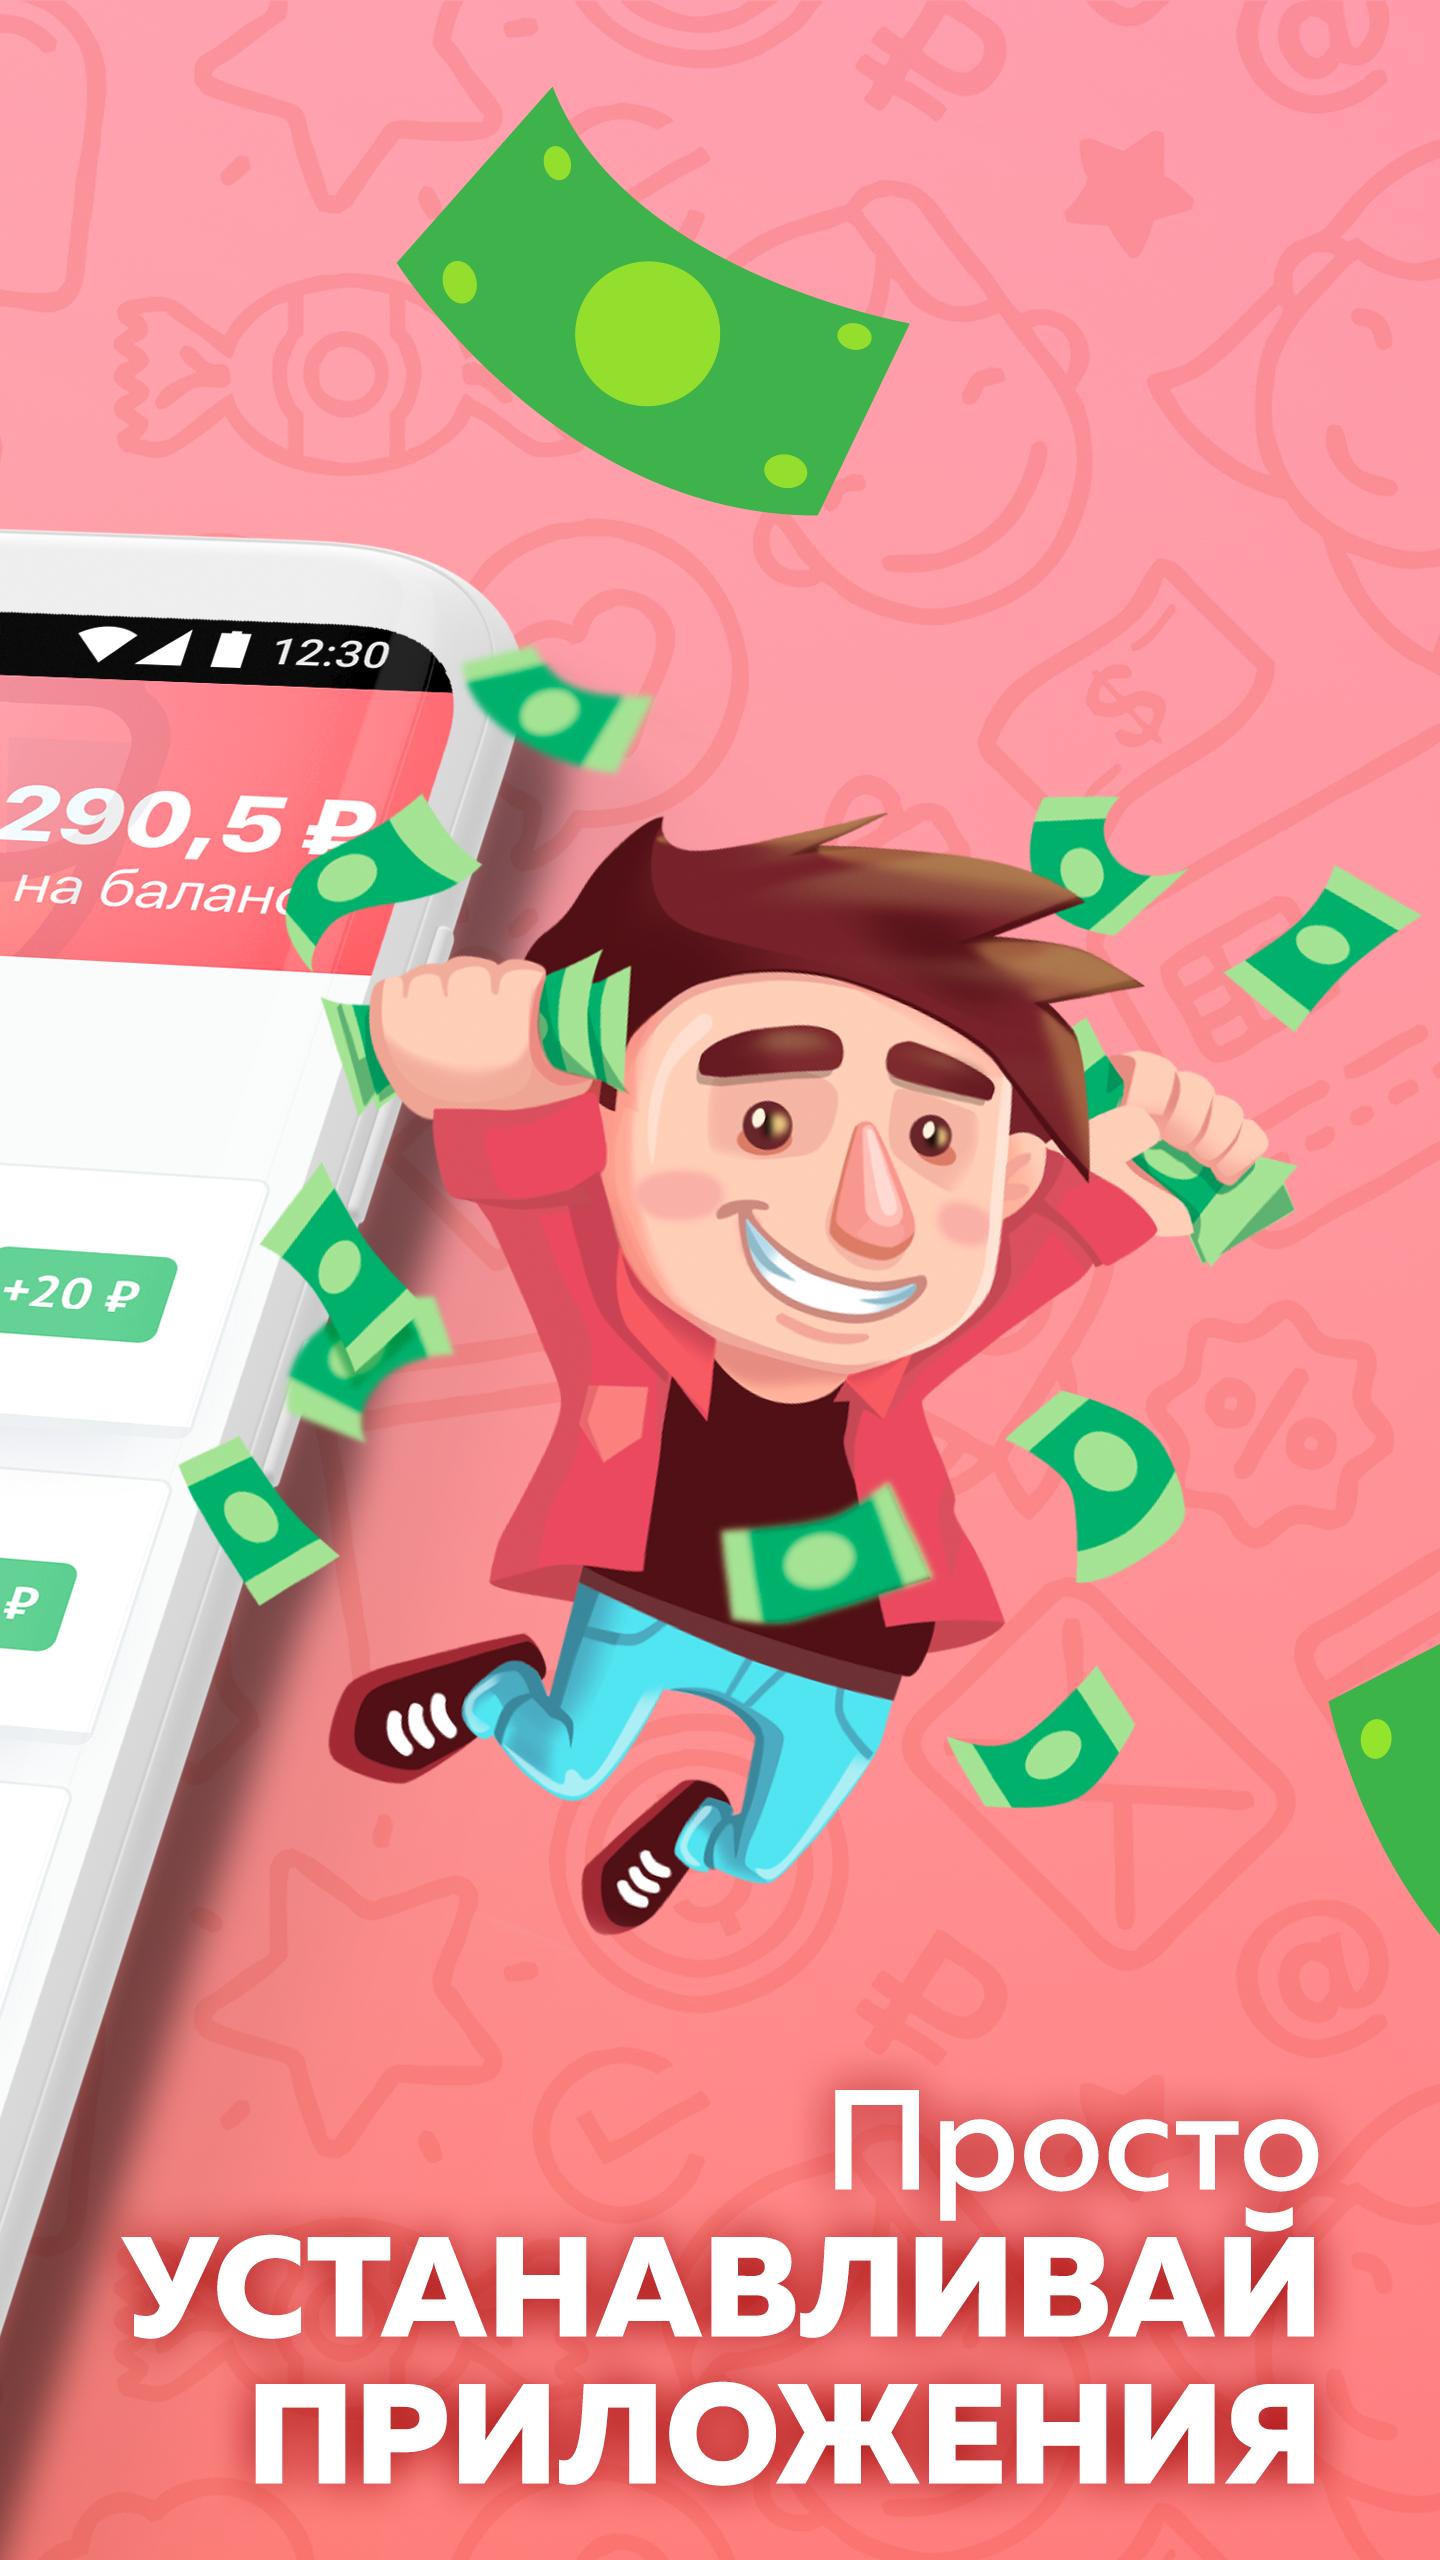 Appbonus — мобильный заработок денег без вложений 4.0.4806 Screenshot 2